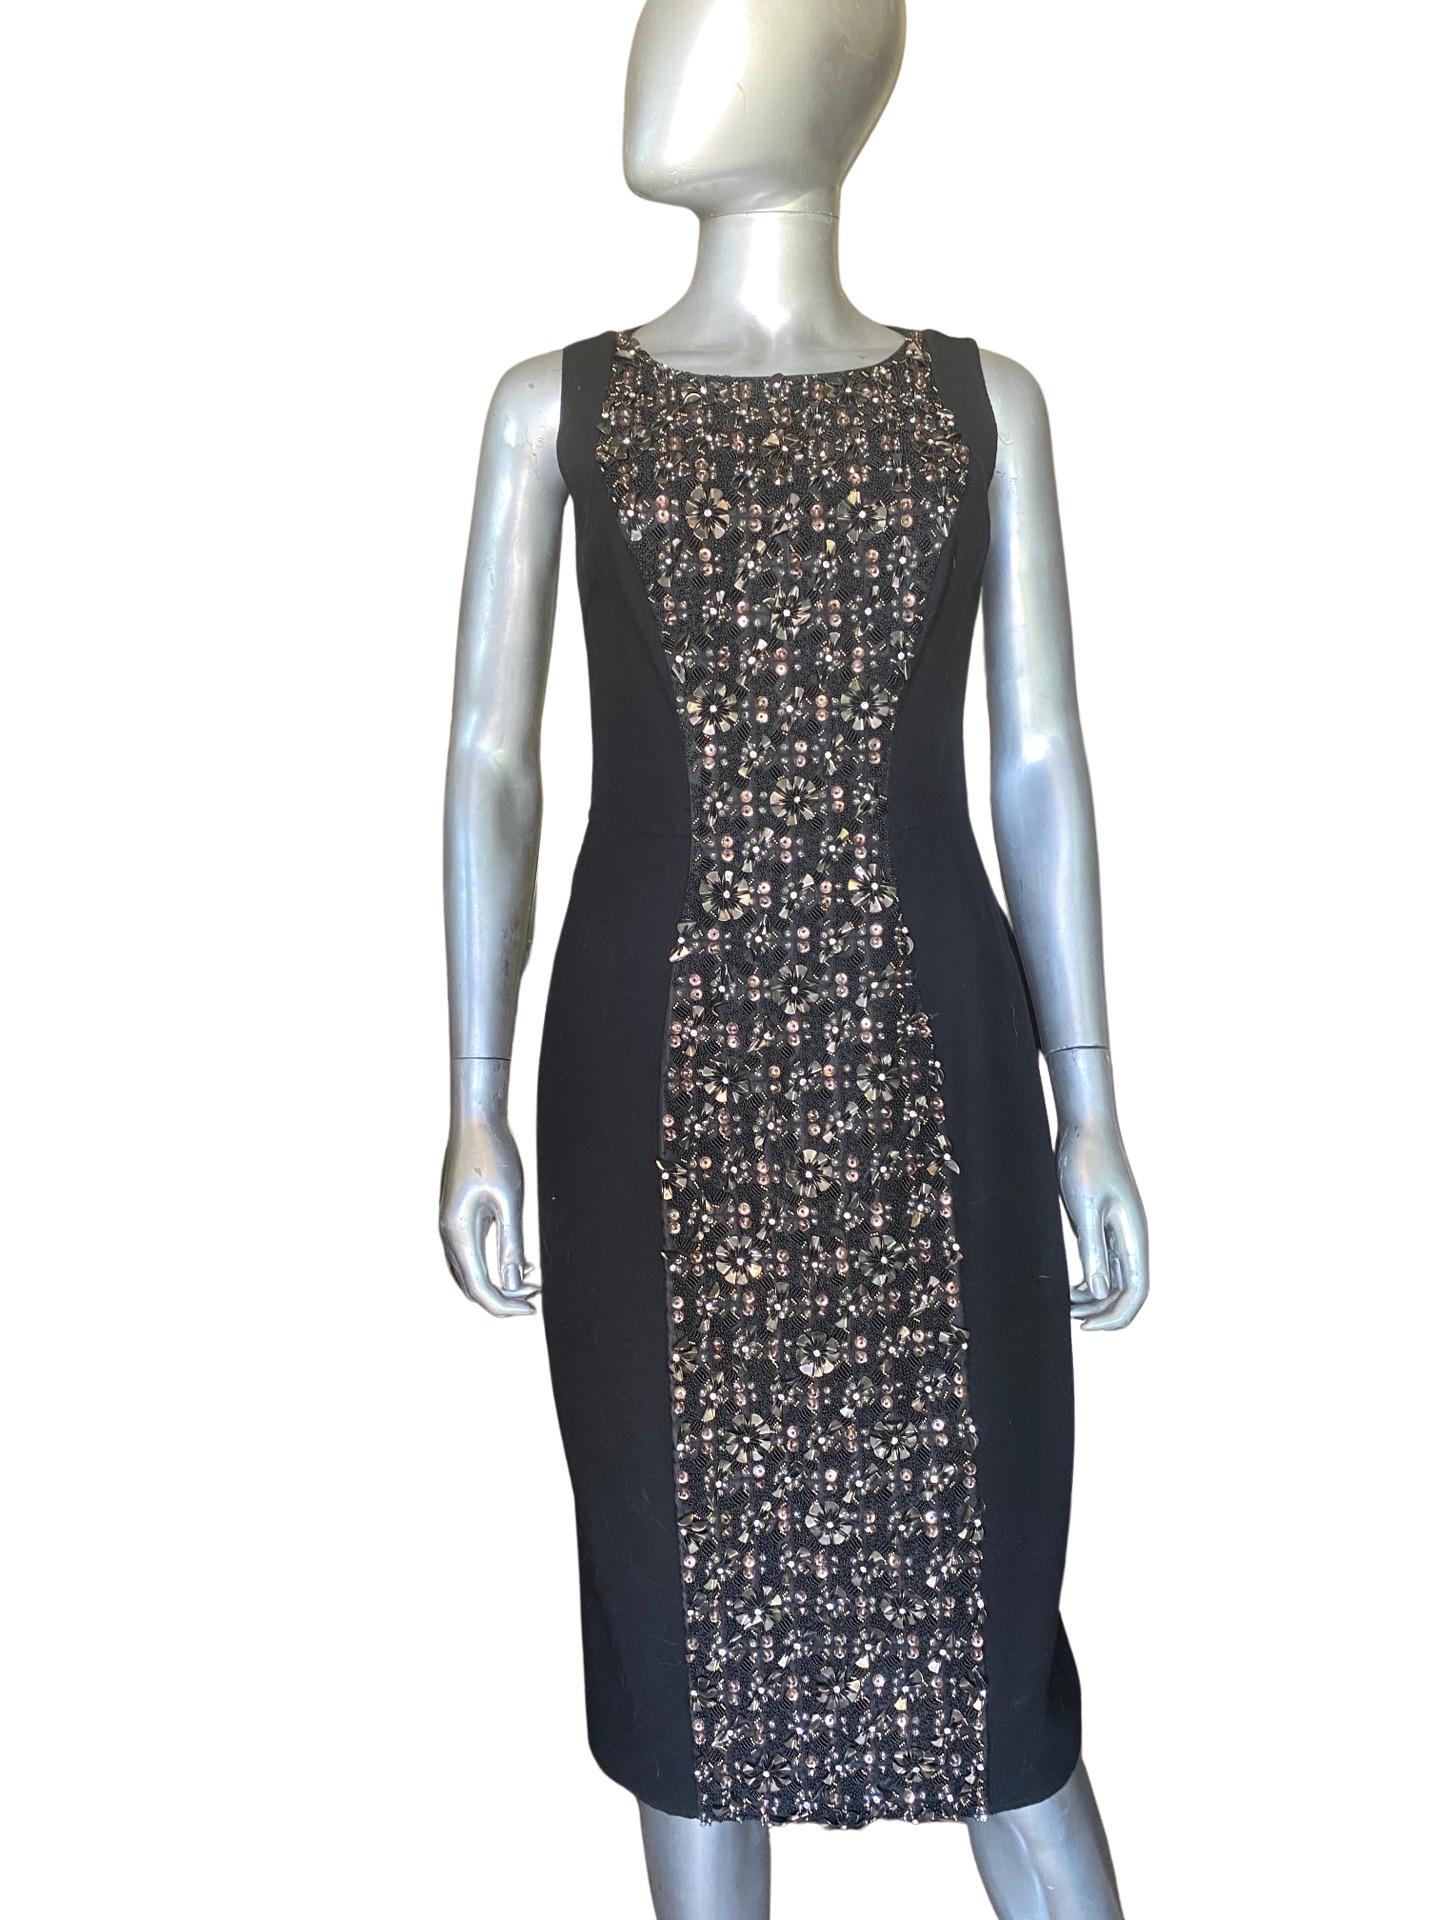 Women's Carmen Marc Valvo Couture Black Sleeveless Chemise Beaded Work of Art Size 4 For Sale